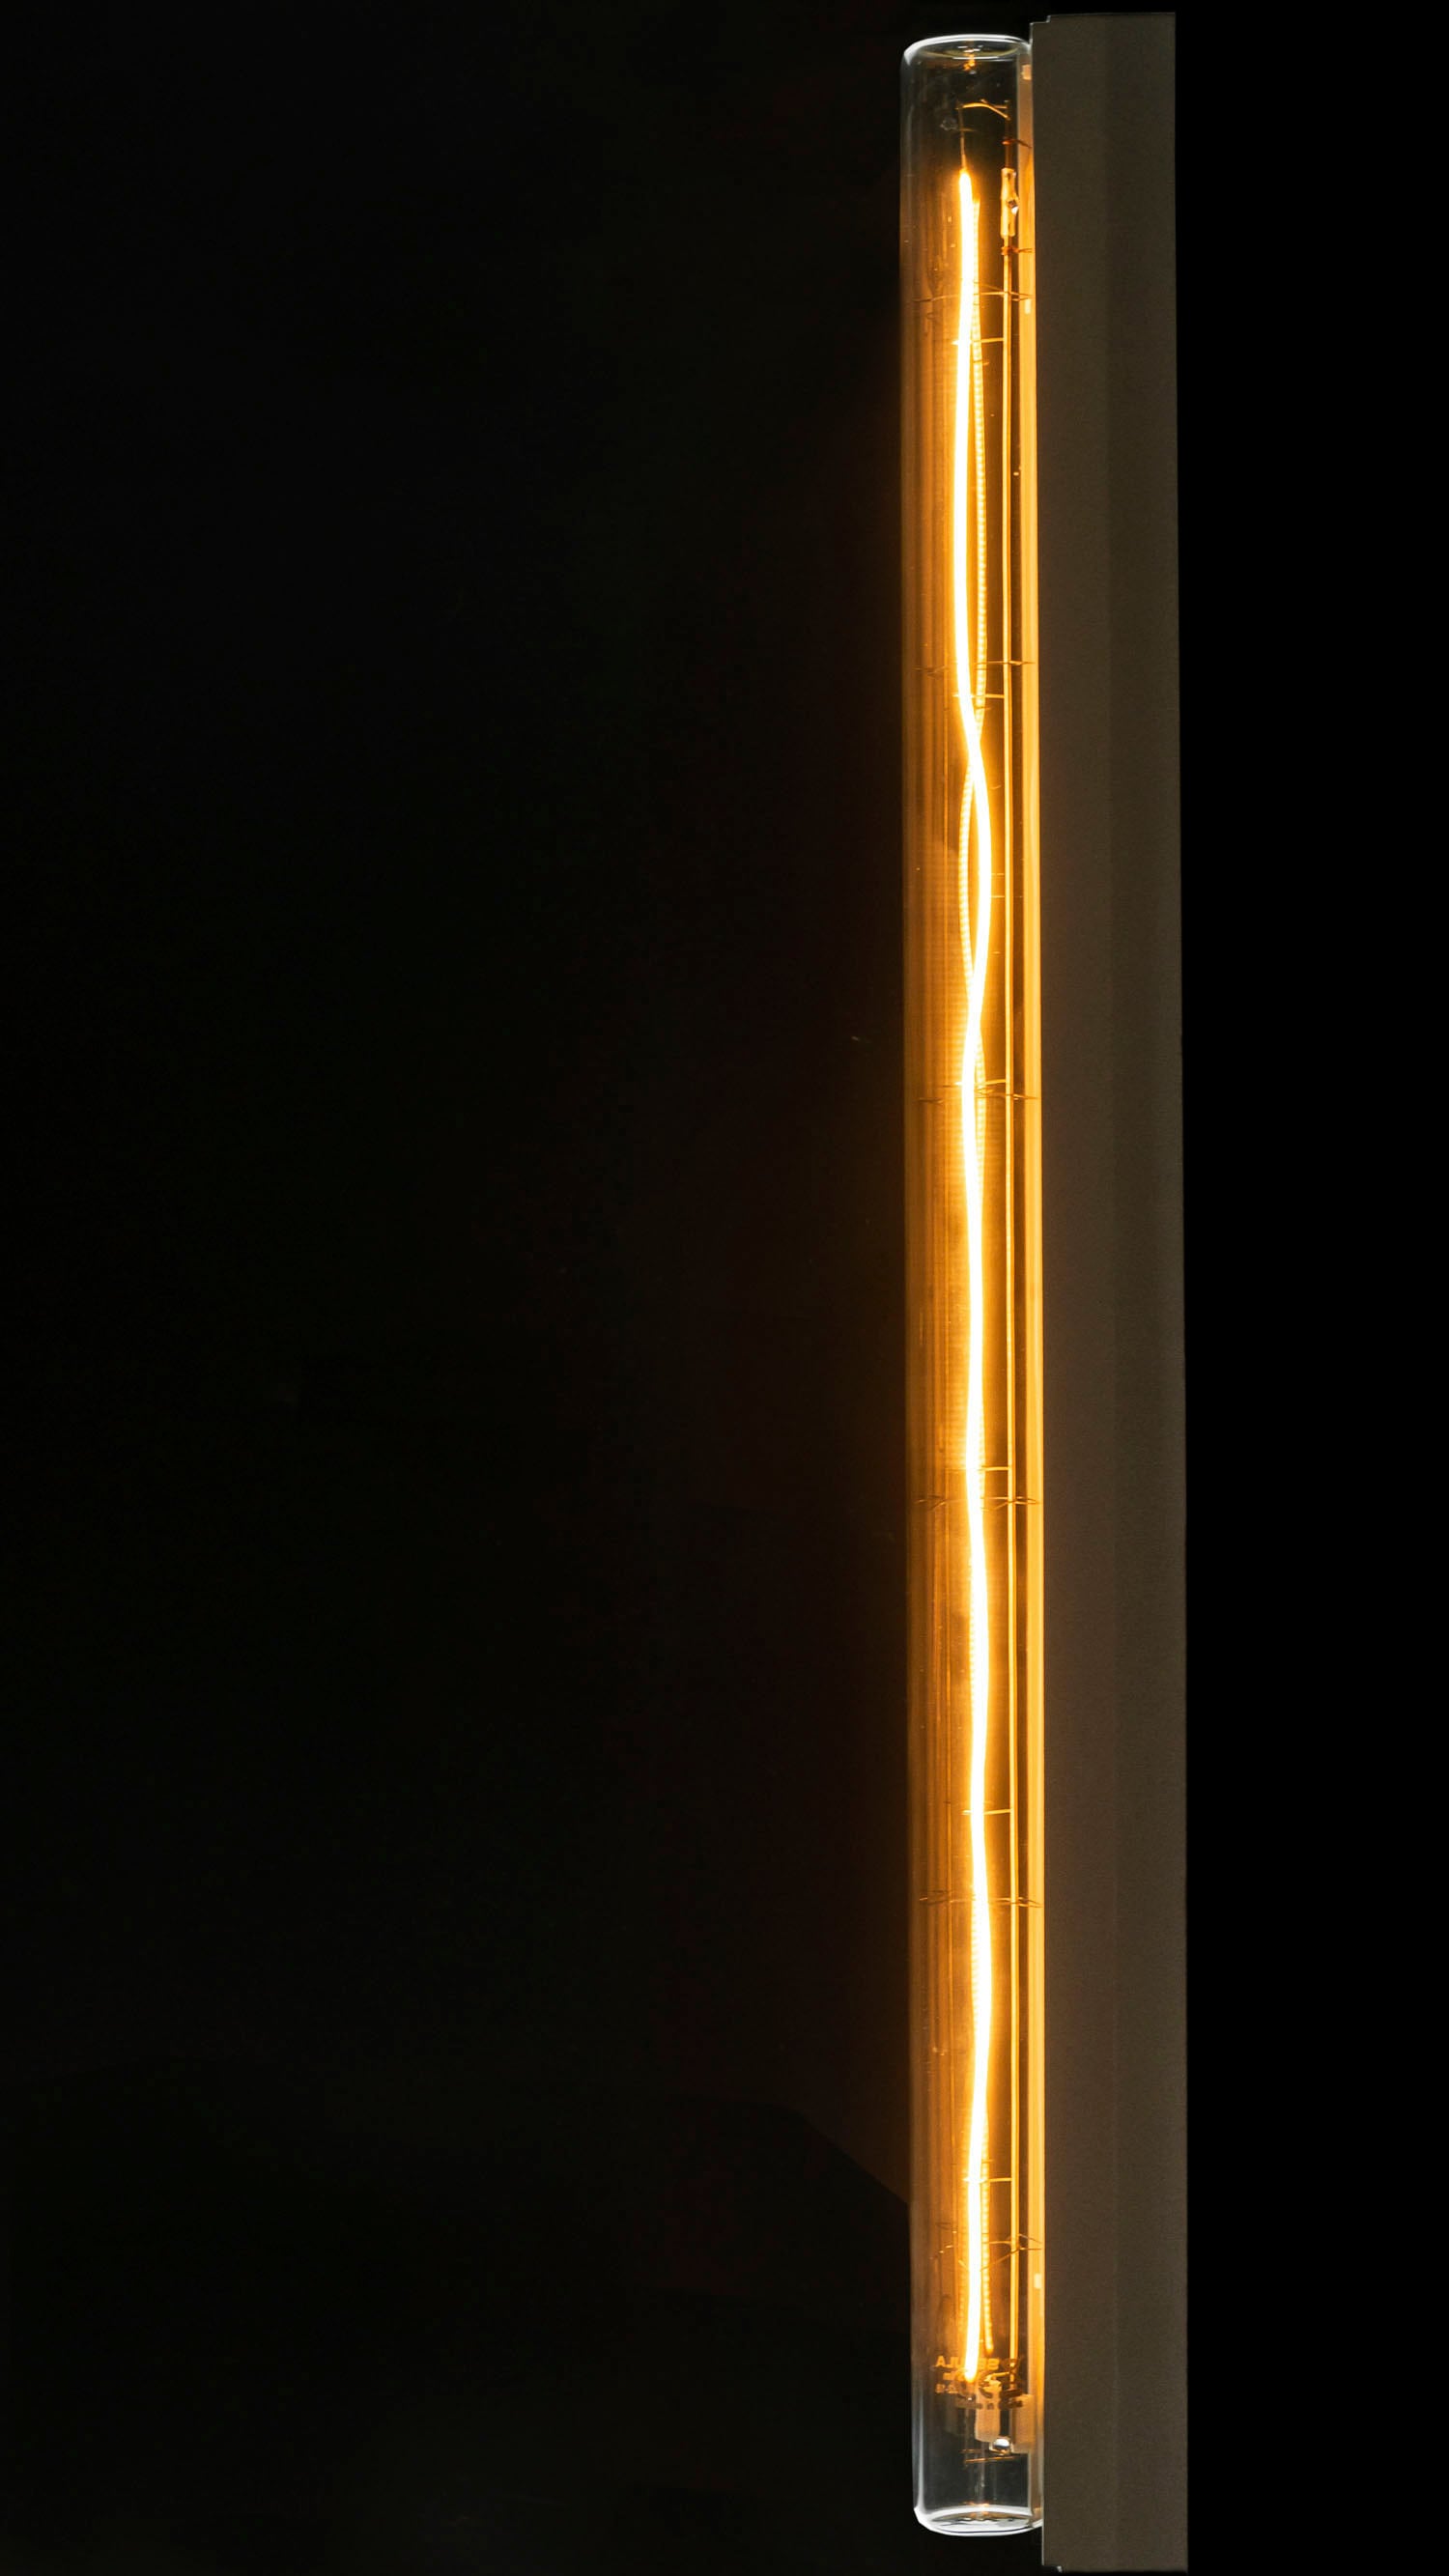 SEGULA LED-Leuchtmittel »LED Linienlampe S14s 500mm klar«, S14s, 1 St., Extra-Warmweiß, LED Linienlampe S14s 500mm klar, 2200K, 5W, CRI 90, dimmbar